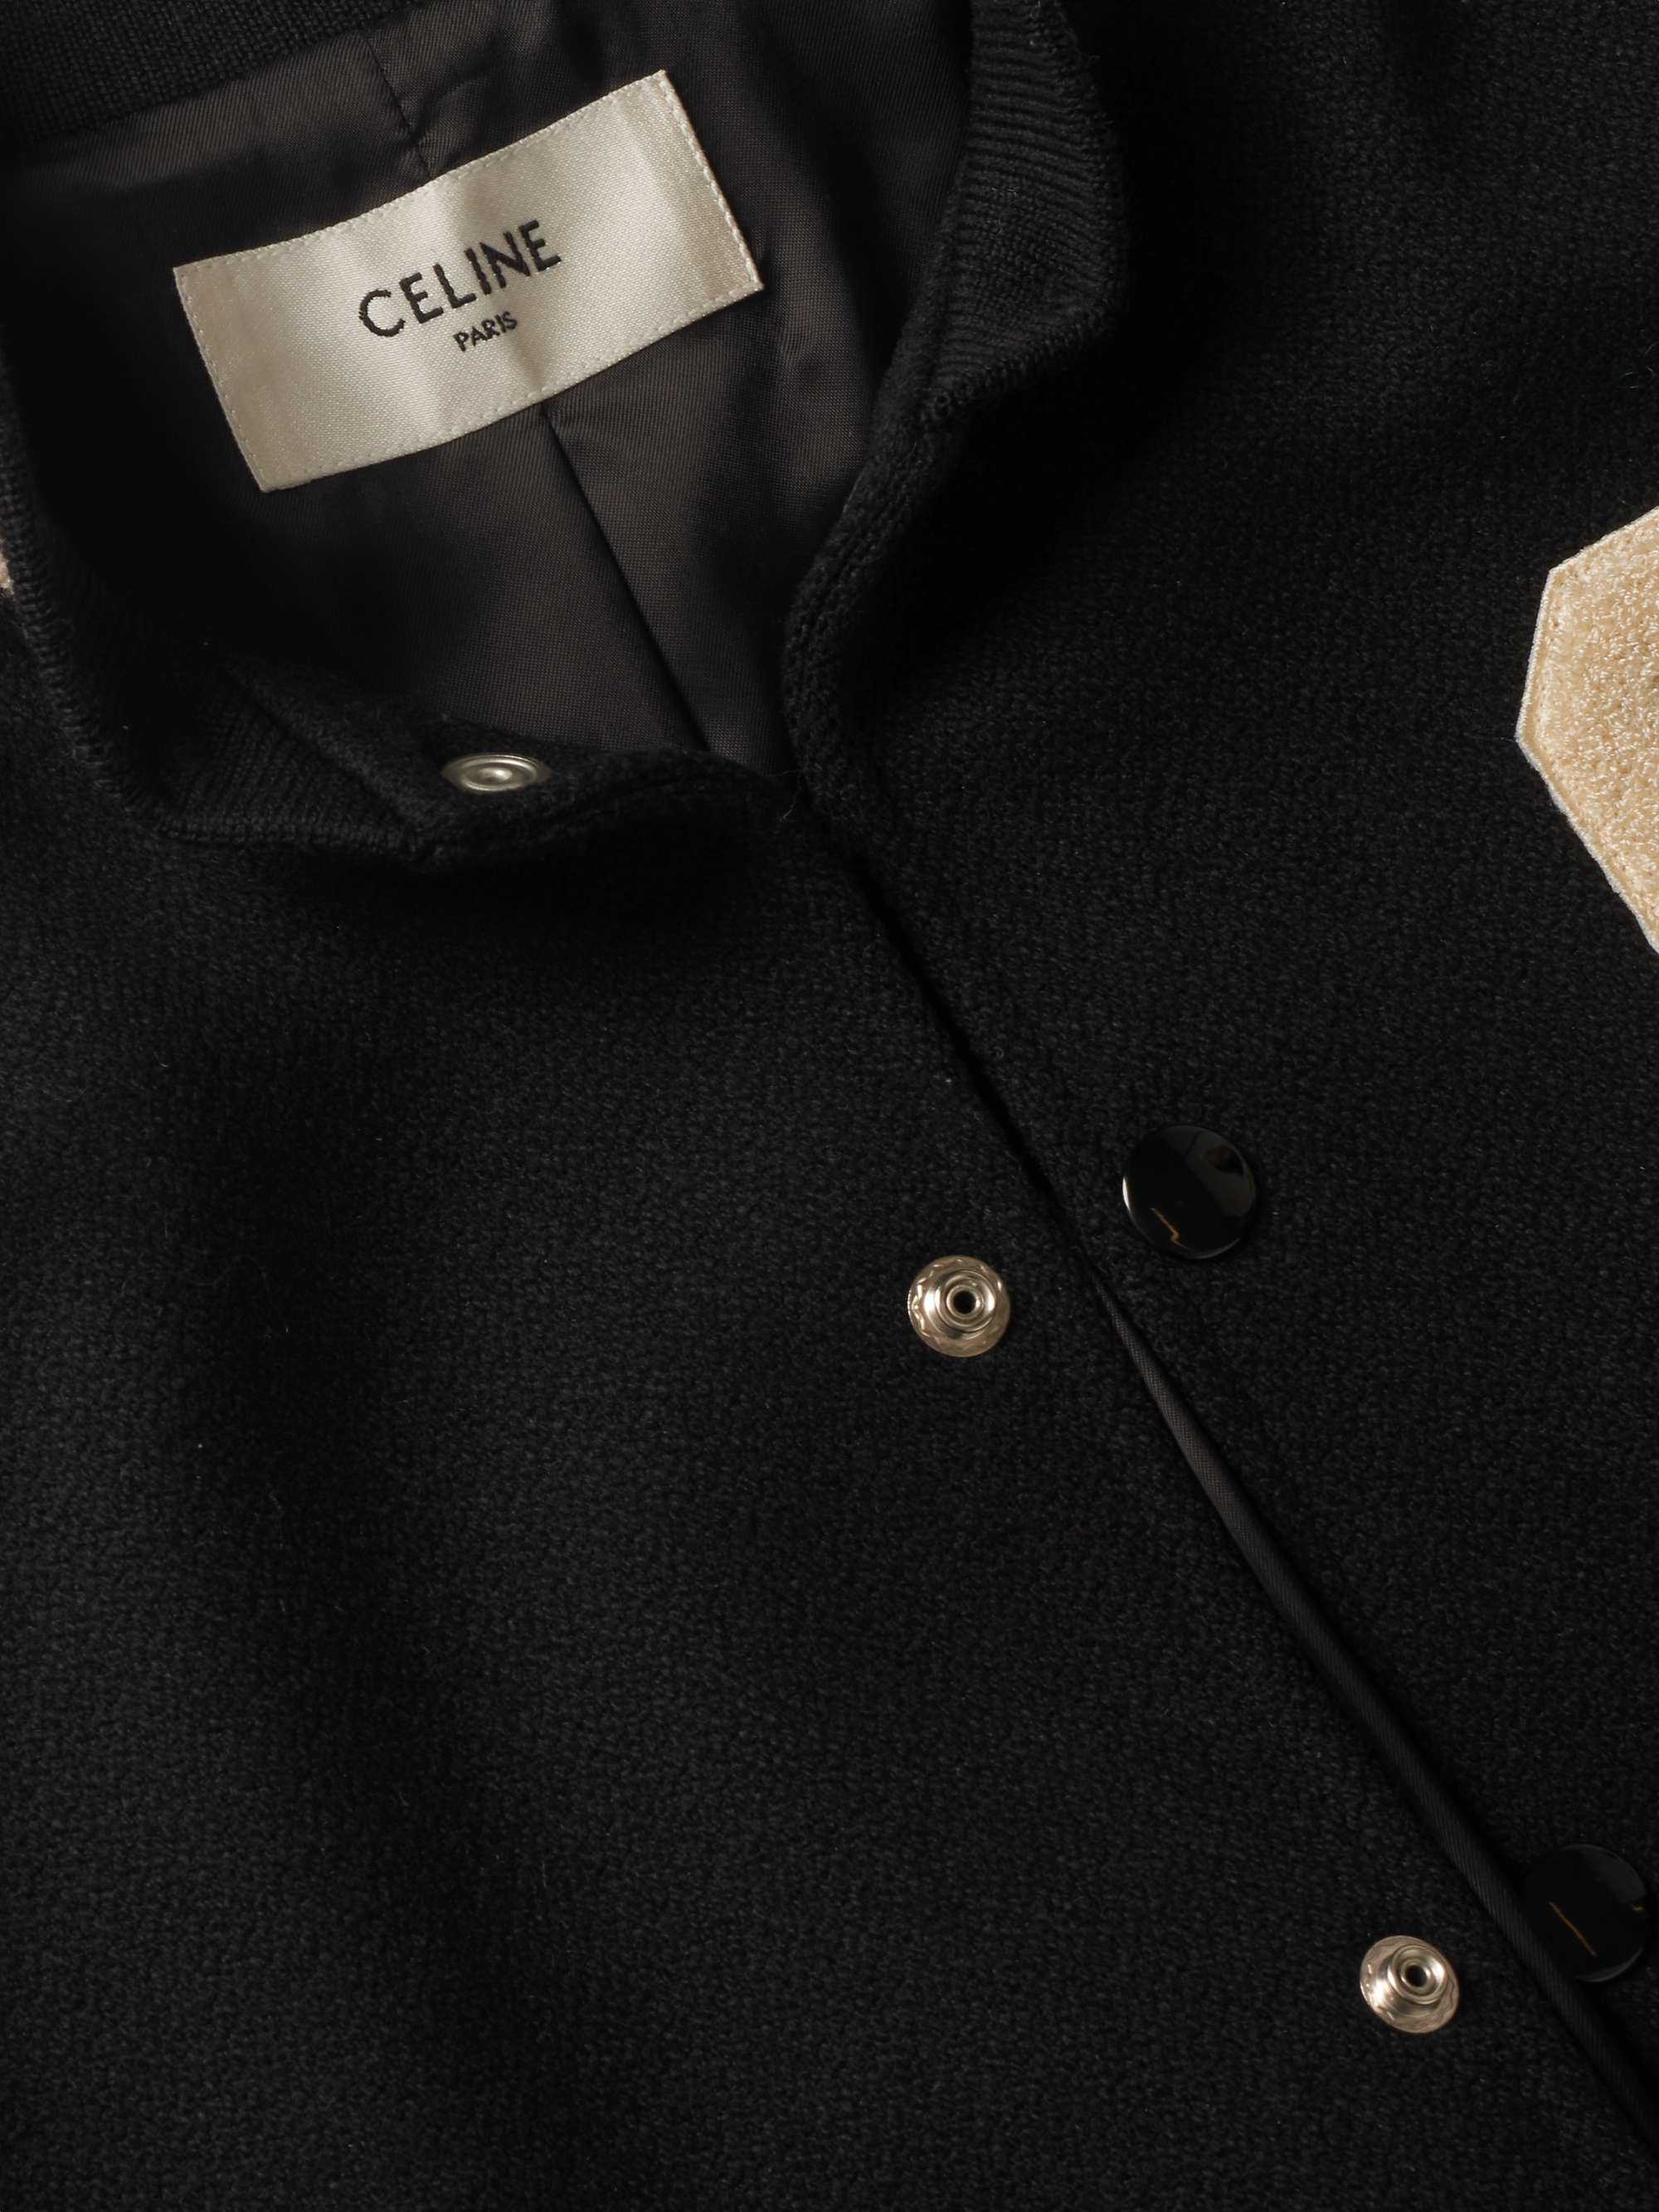 CELINE HOMME Appliquéd Wool-Blend and Leather Bomber Jacket